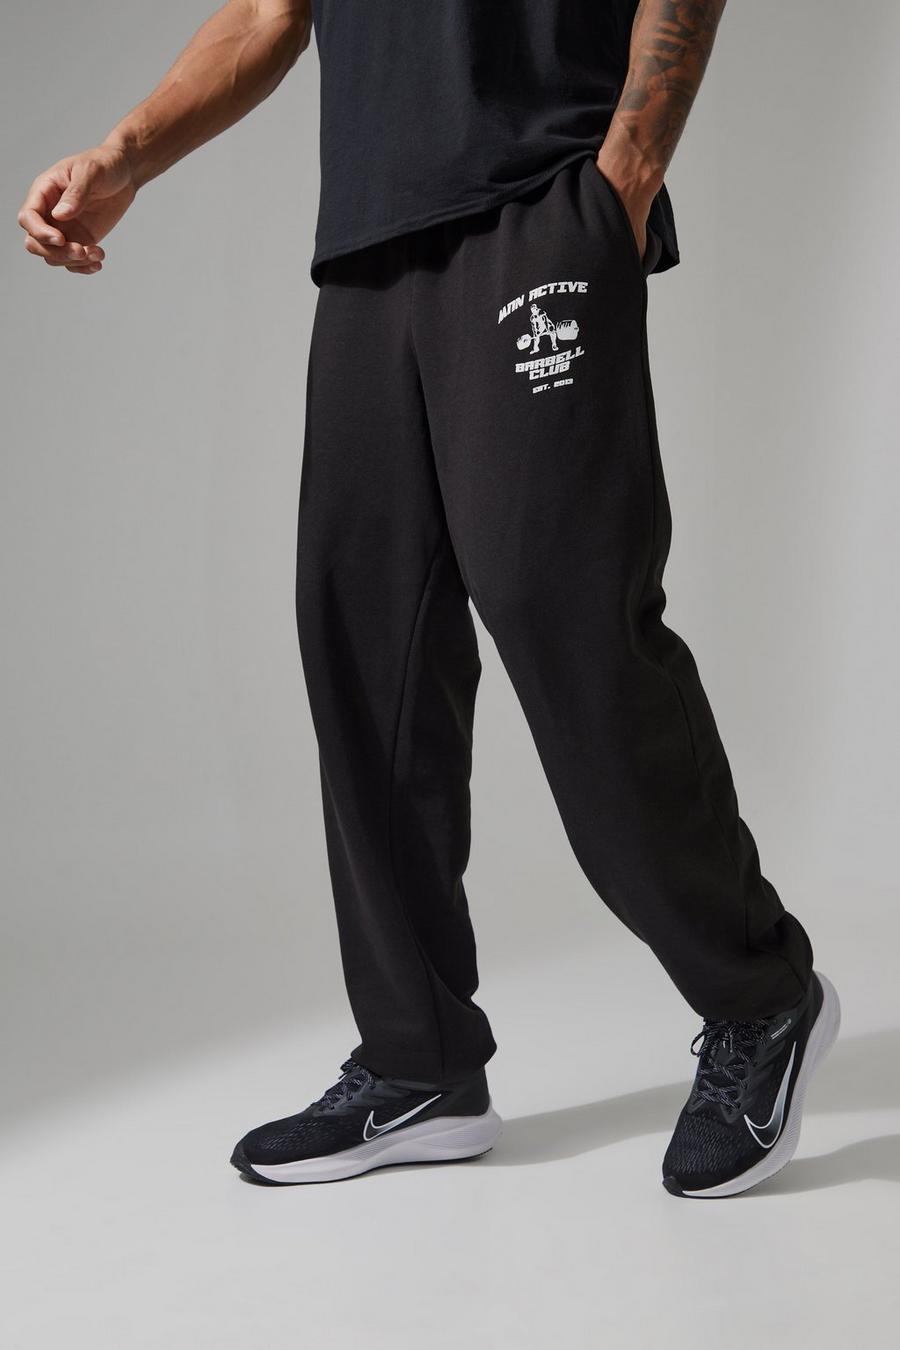 Pantalón deportivo Tall MAN Active oversize con barra, Black